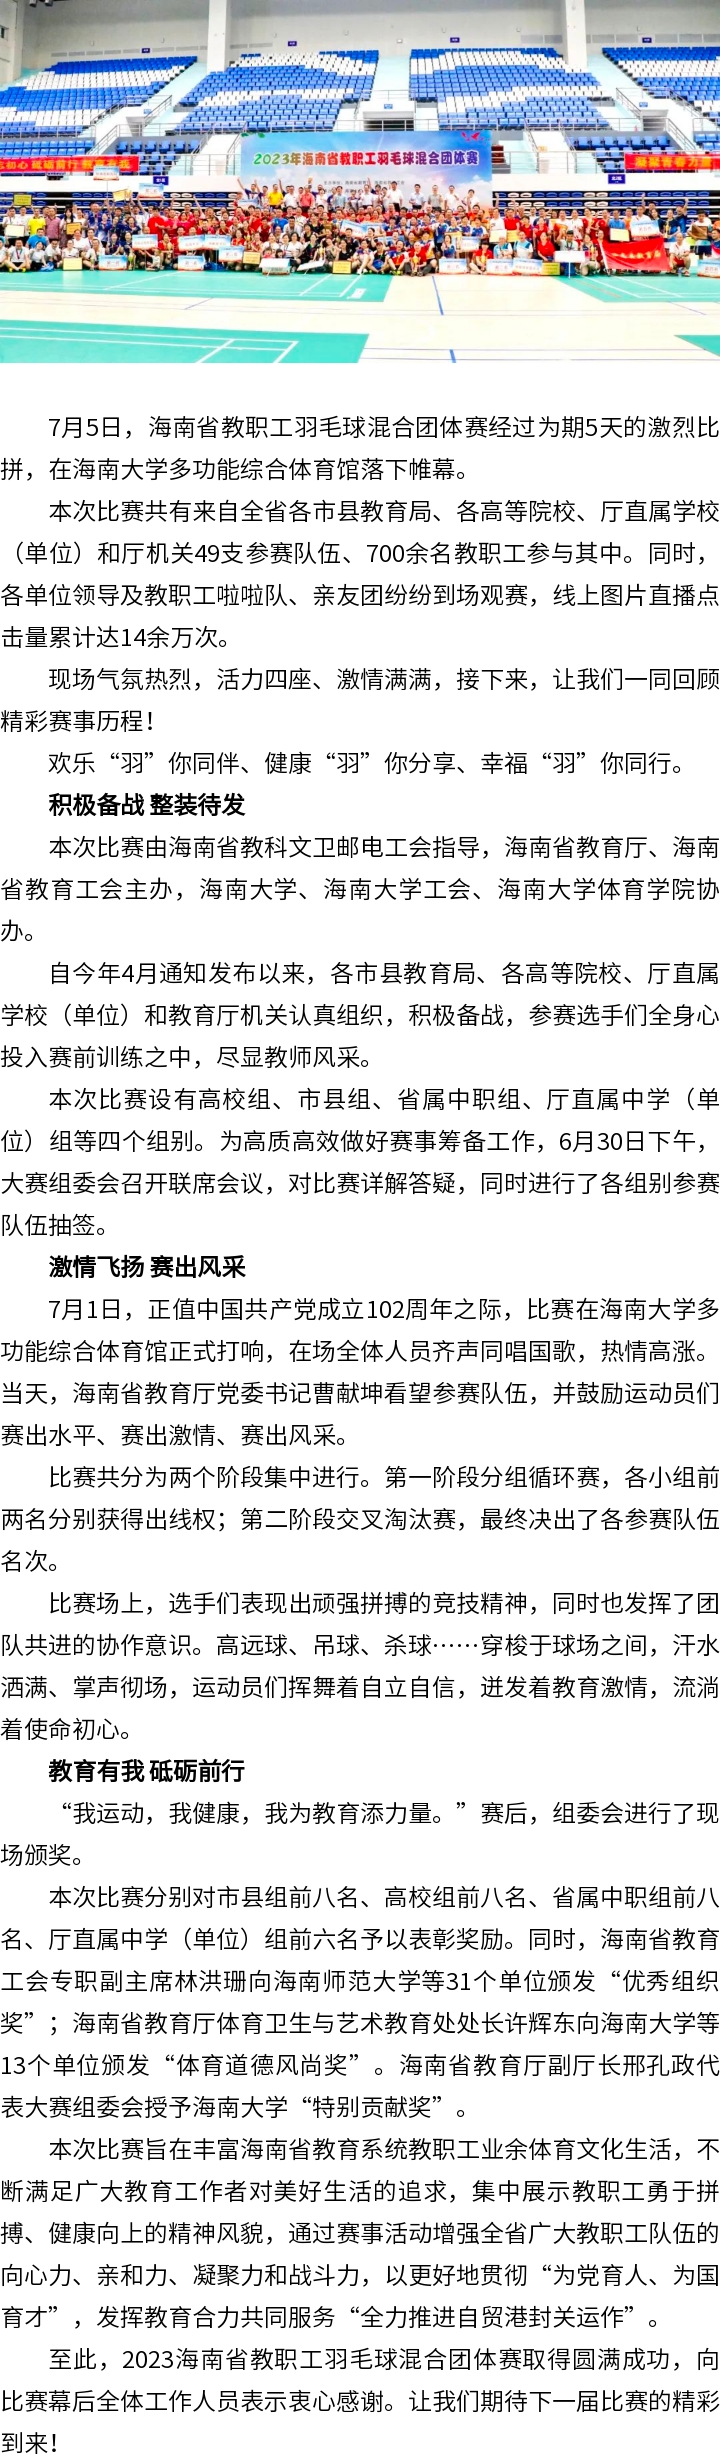 2023年海南省教职工羽毛球混合团体赛圆满落幕